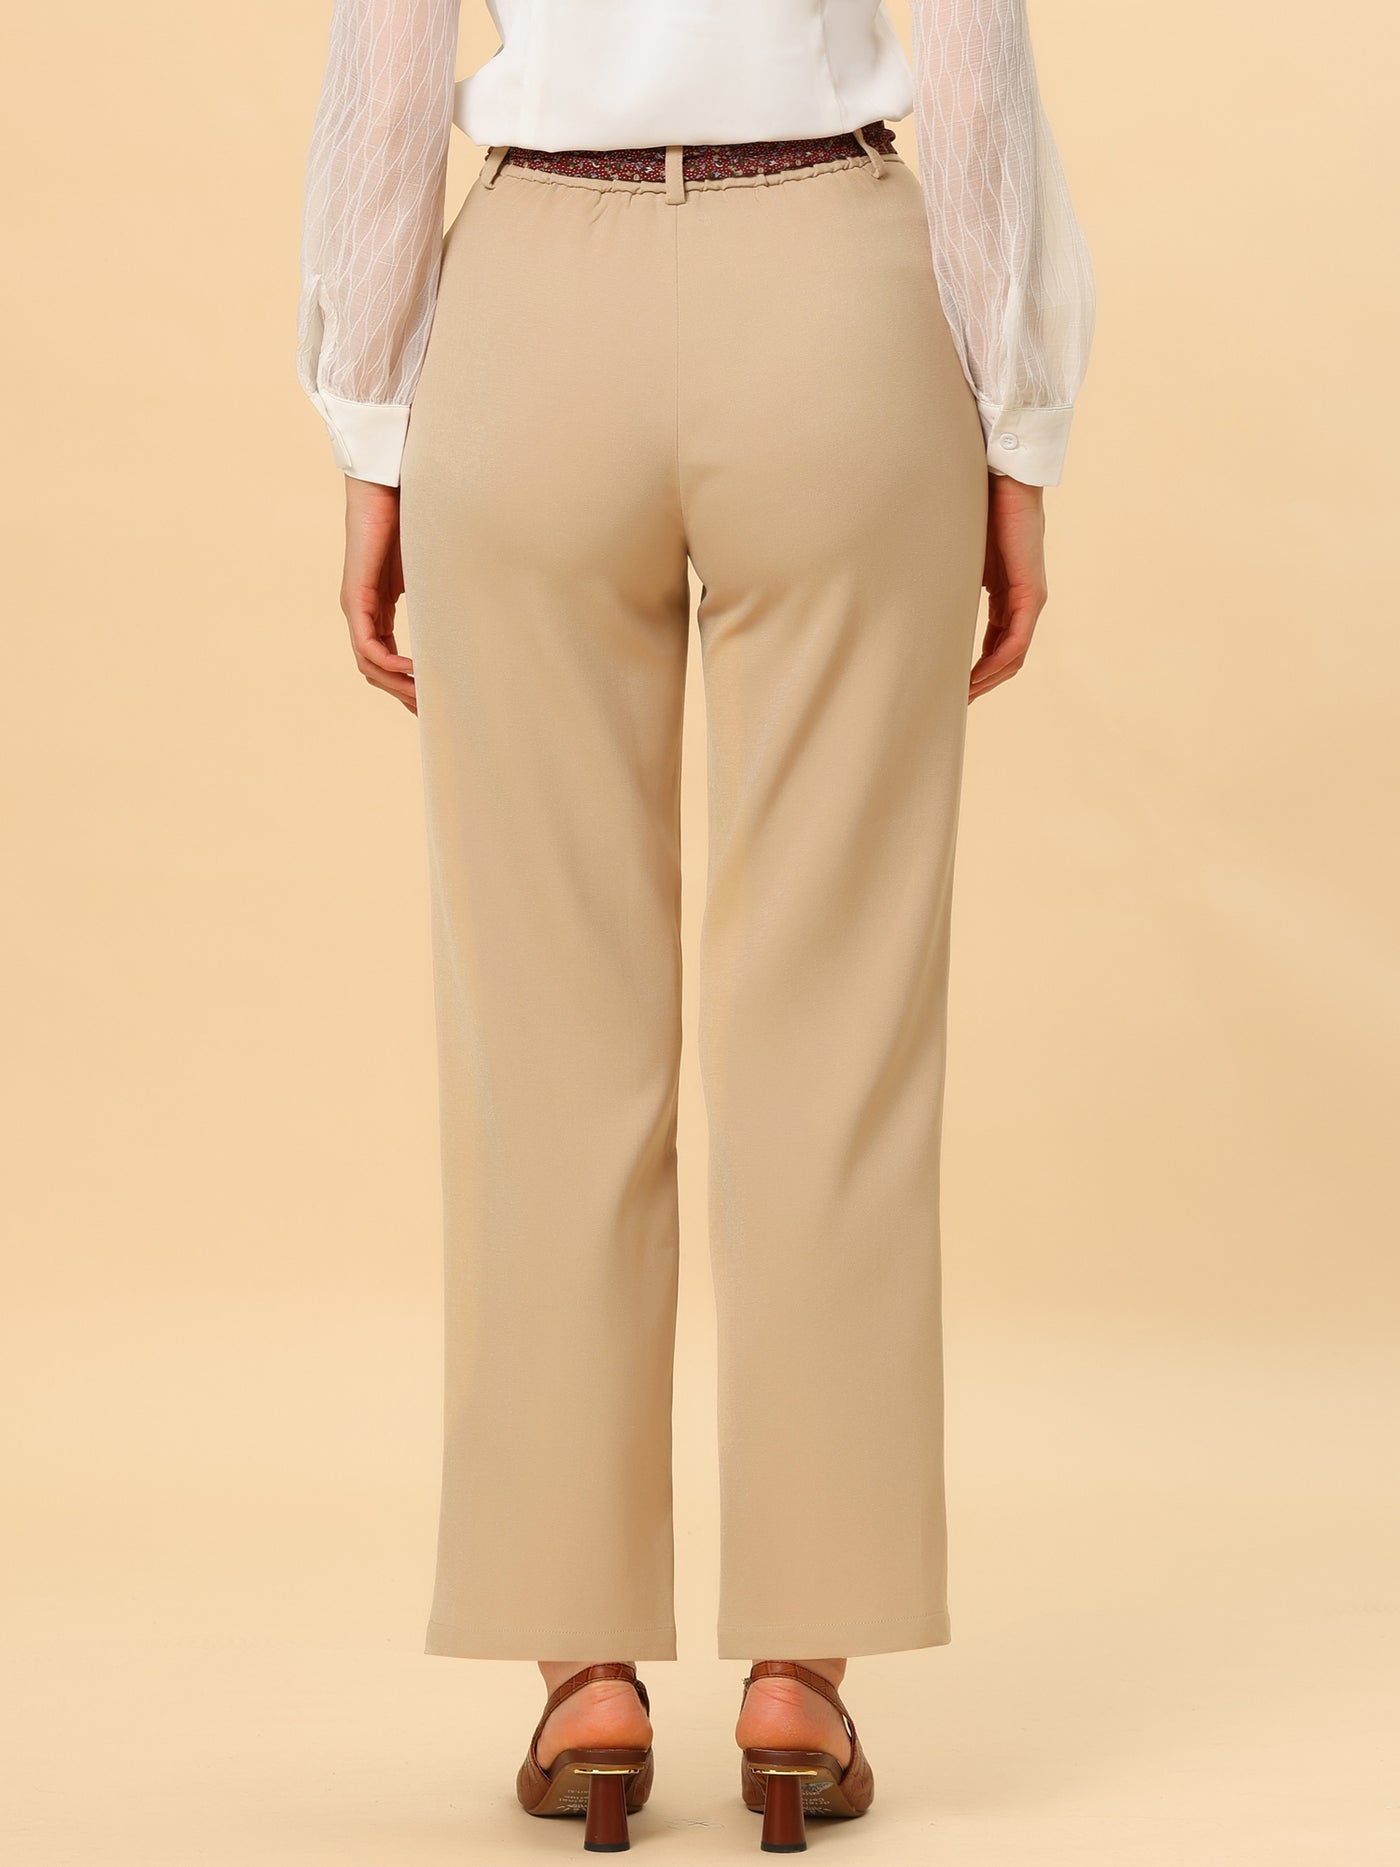 Allegra K Elegant Pants Summer Elastic Back High Waisted Work Office Trousers